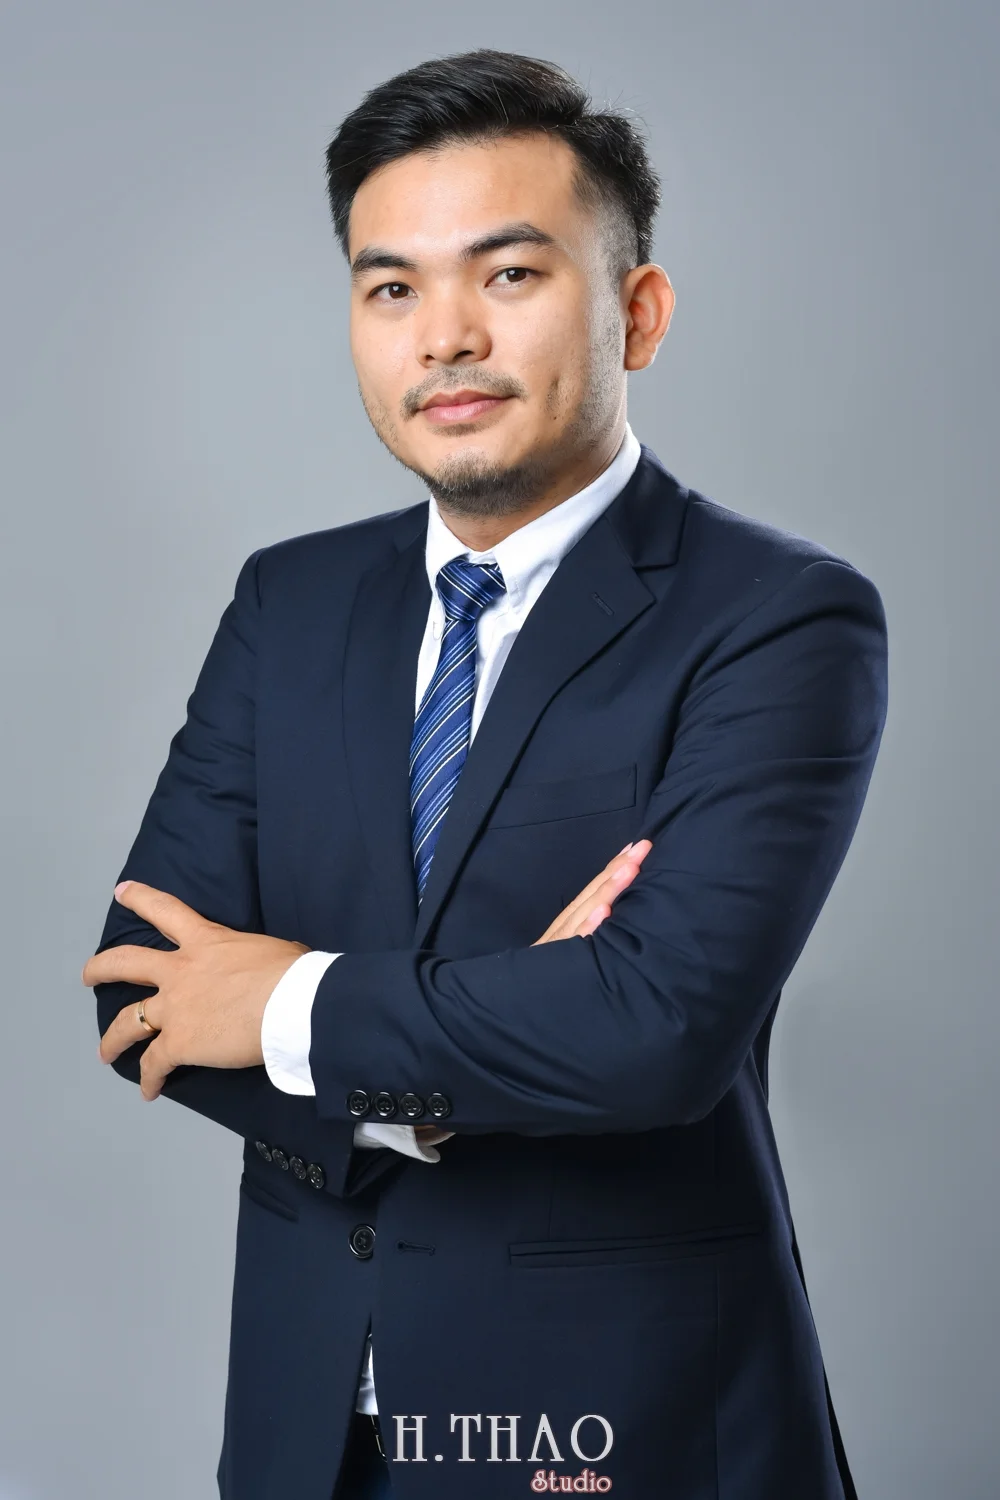 Anh profile cong ty 3 - Báo giá chụp hình Công ty -Doanh nghiệp ở Tp.HCM